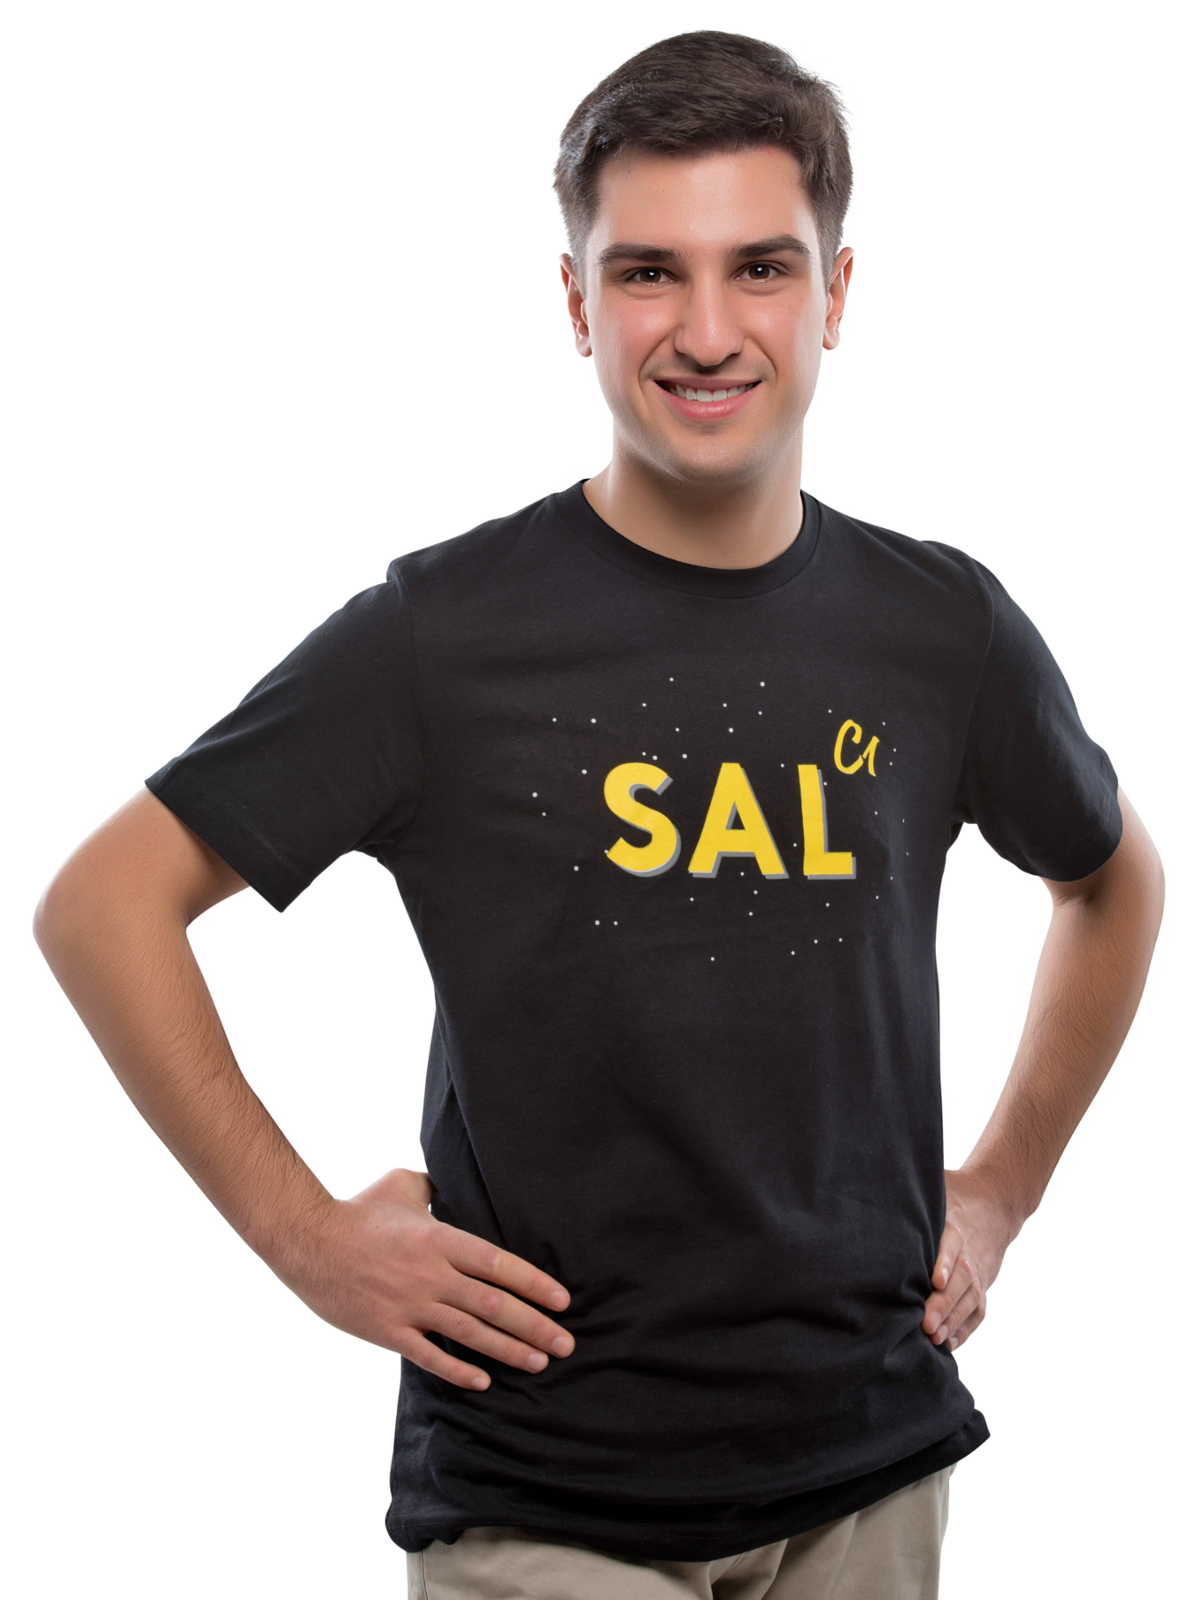 SalC1 - Downloads